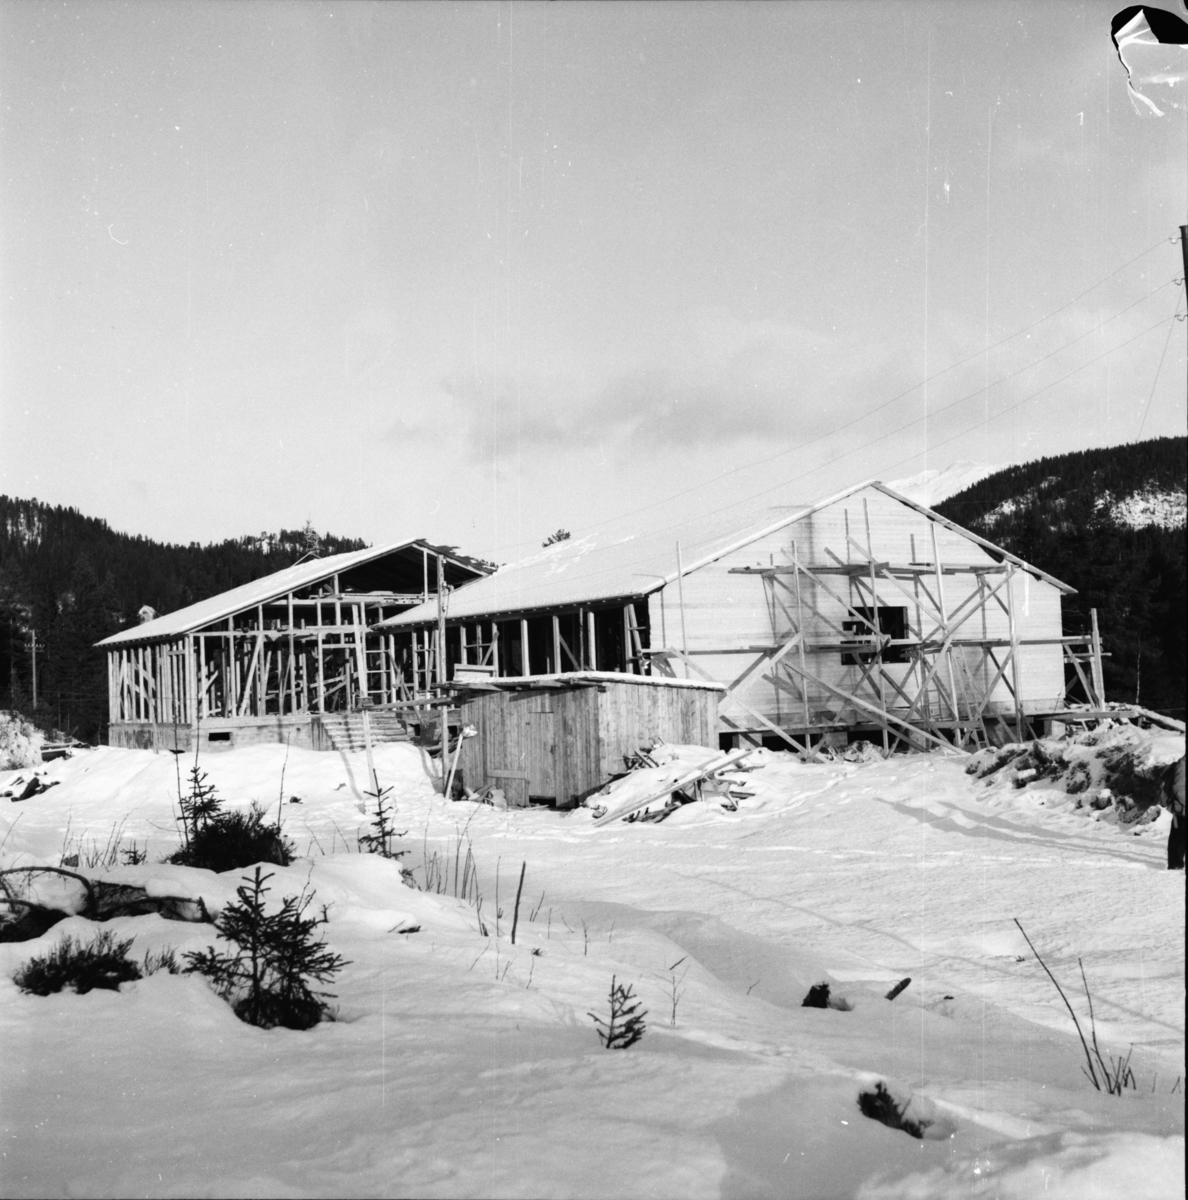 Vardens arkiv. "Ny skole i Vinje. Rutebileier Bjørn Gardsjord" 09.01.1954